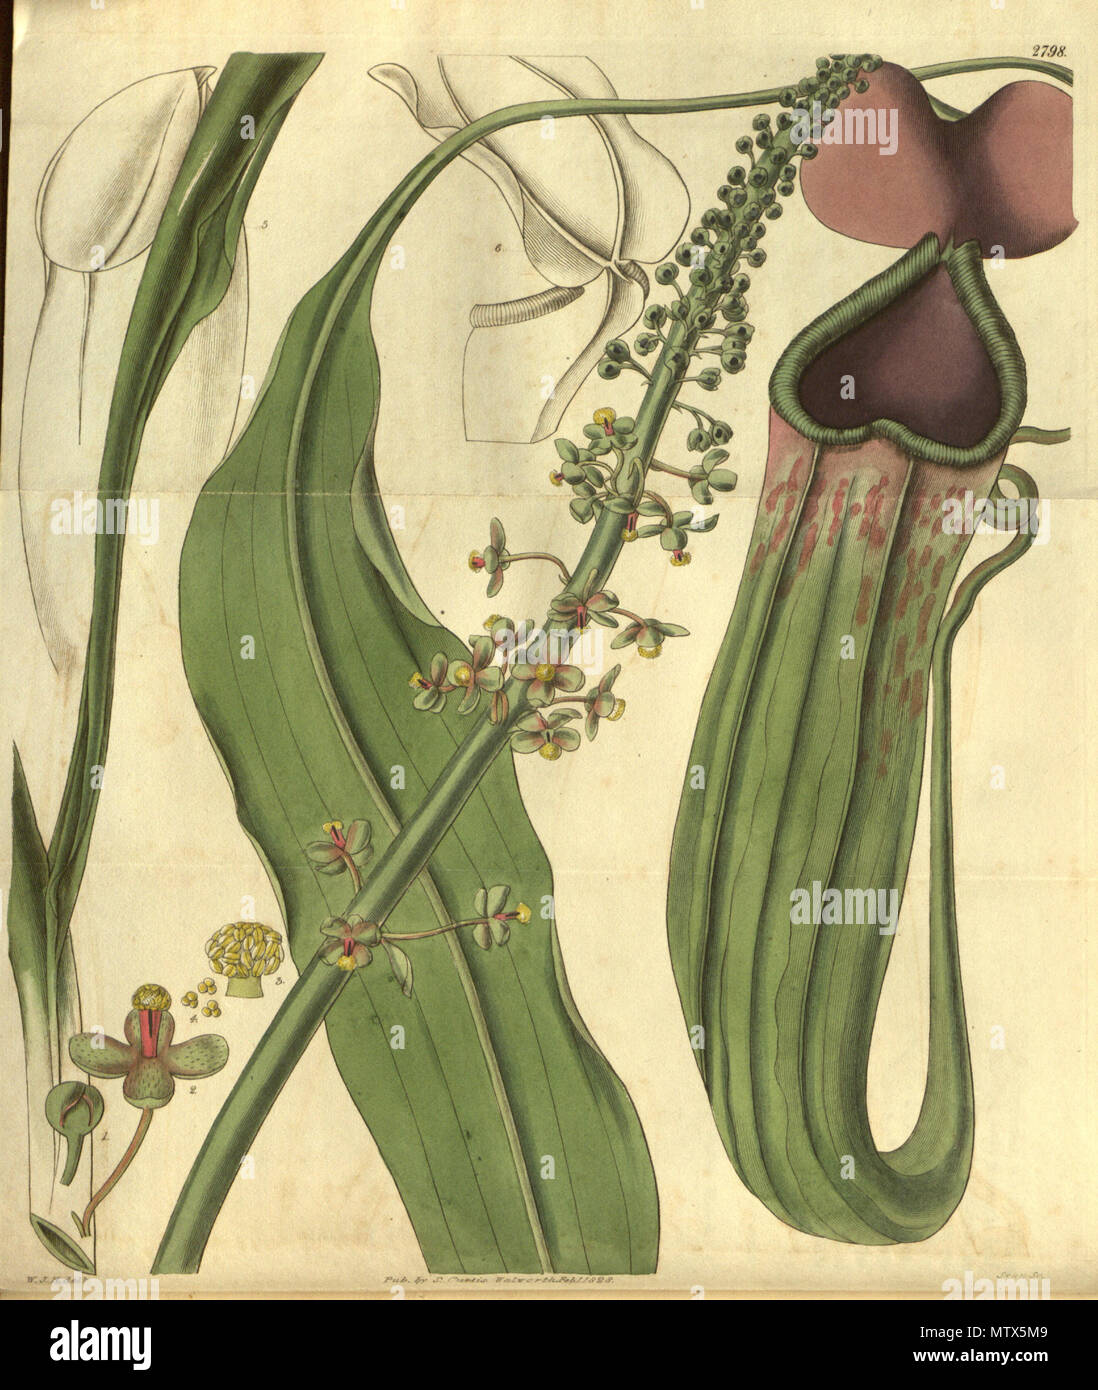 440 Nepenthes khasiana - Curtis’s Botanical Magazine (1828) Stock Photo